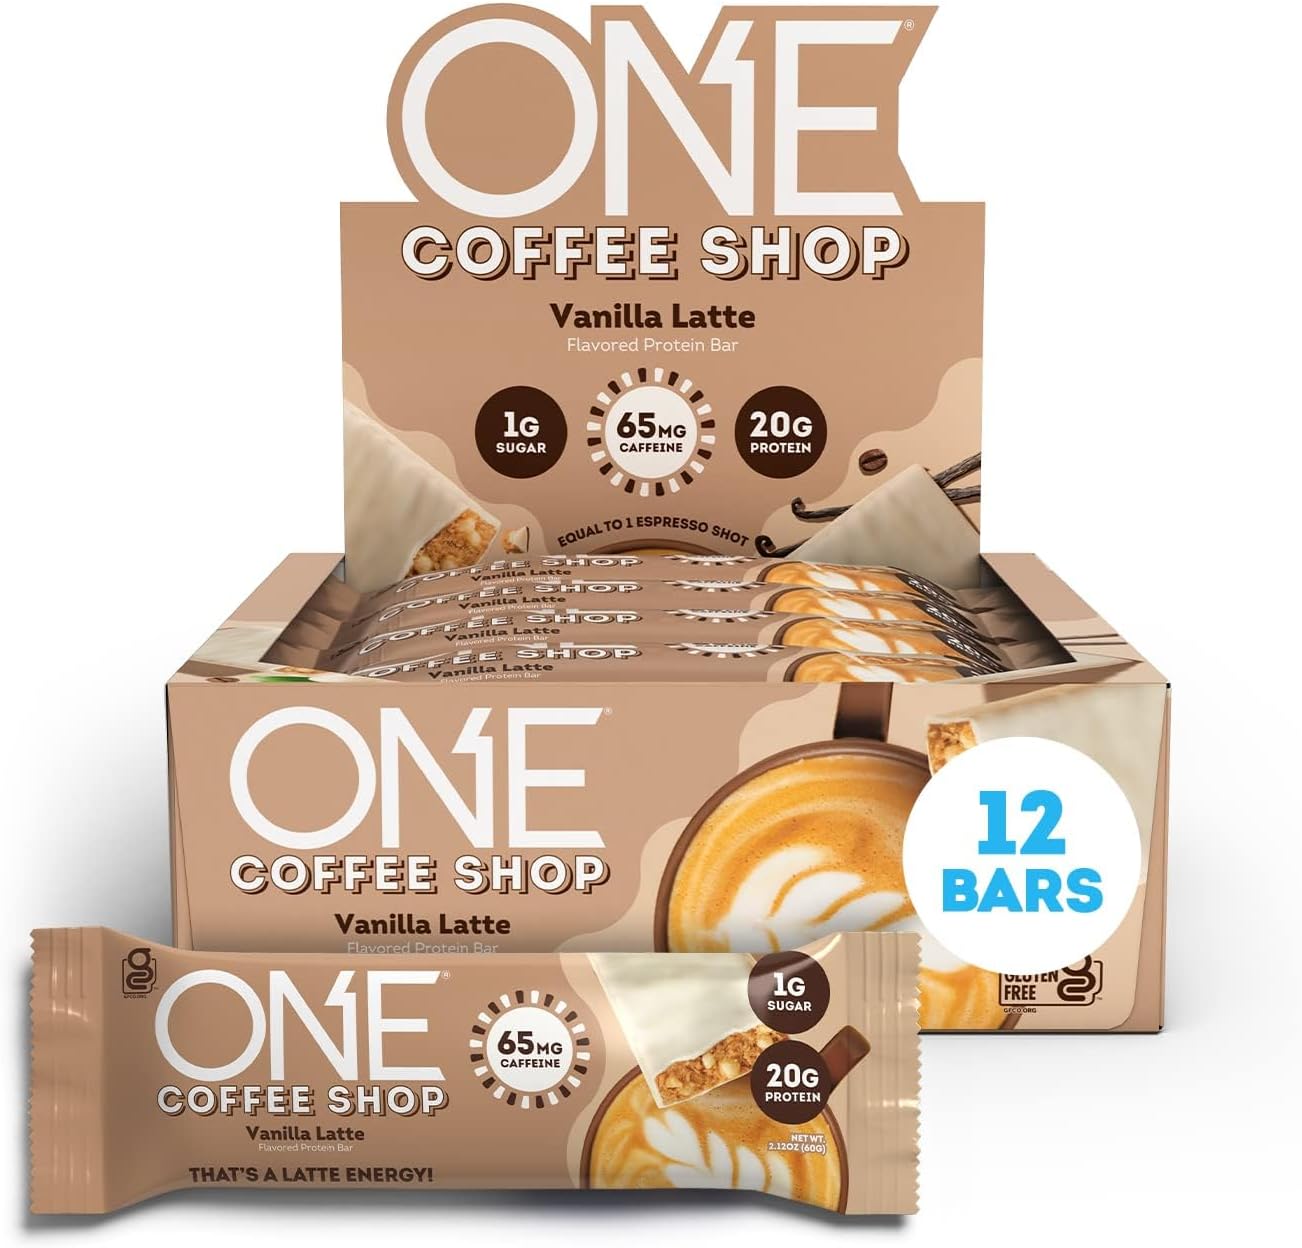 ONE Coffee Shop Protein Bars + Caffeine, Vanilla Latte, Gluten Free wi1.75 Pounds